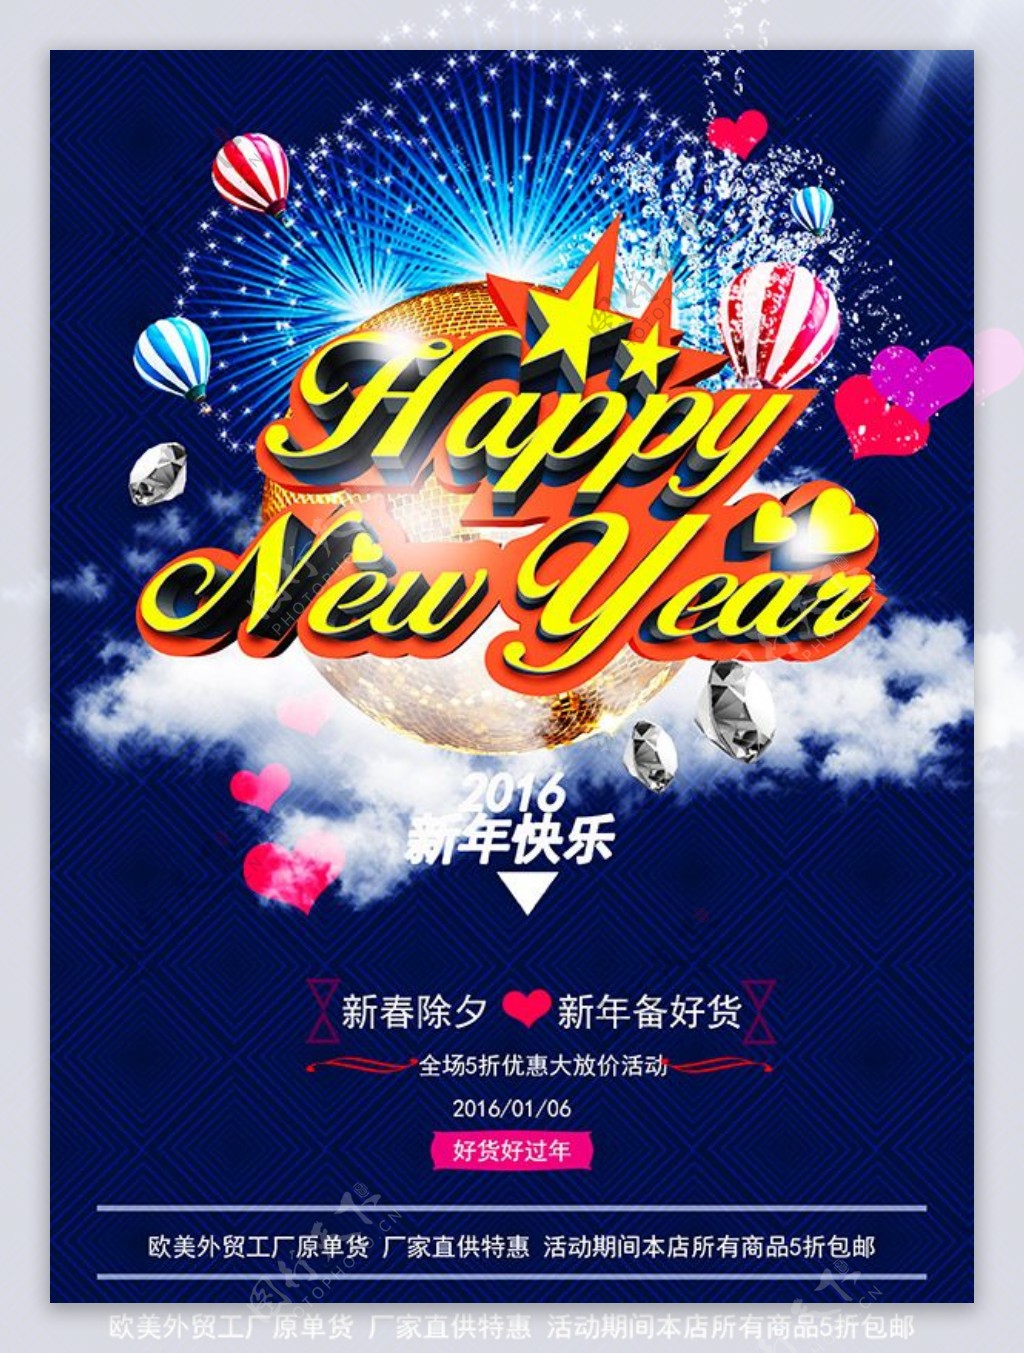 新年快乐主题海报psd素材下载